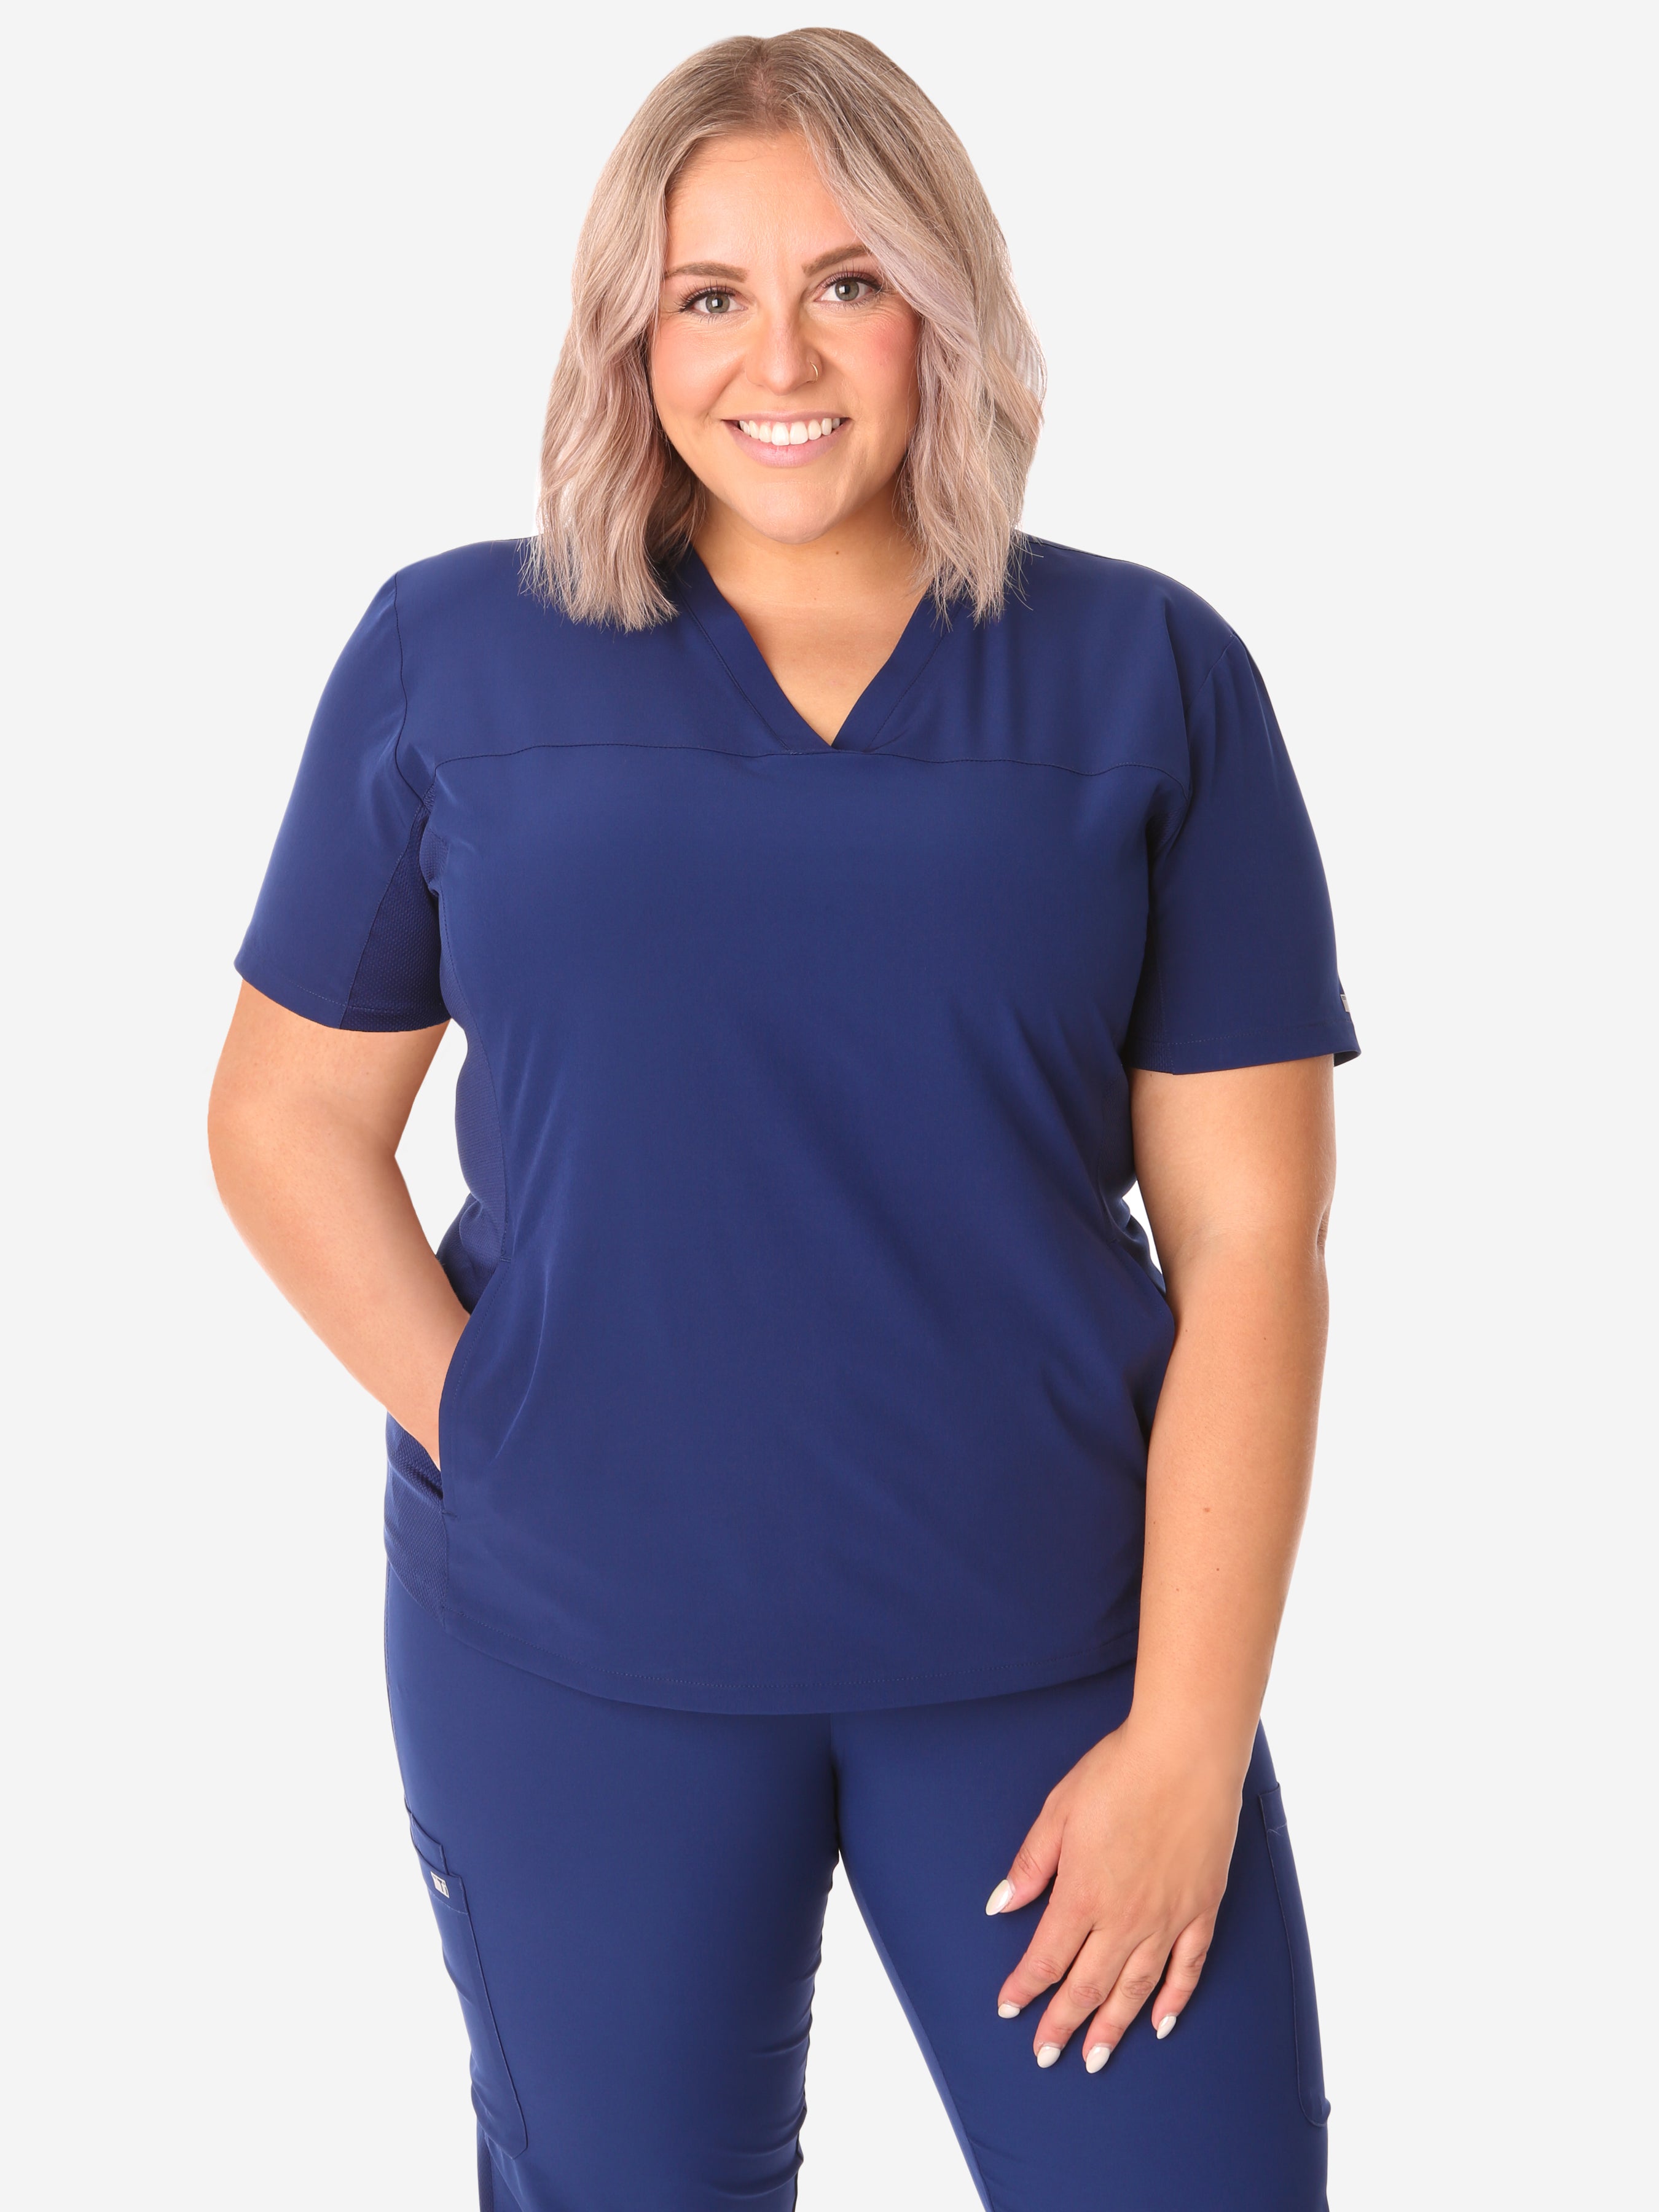 TiScrubs Women's Navy Blue Stash-Pocket Scrub Top Only Front